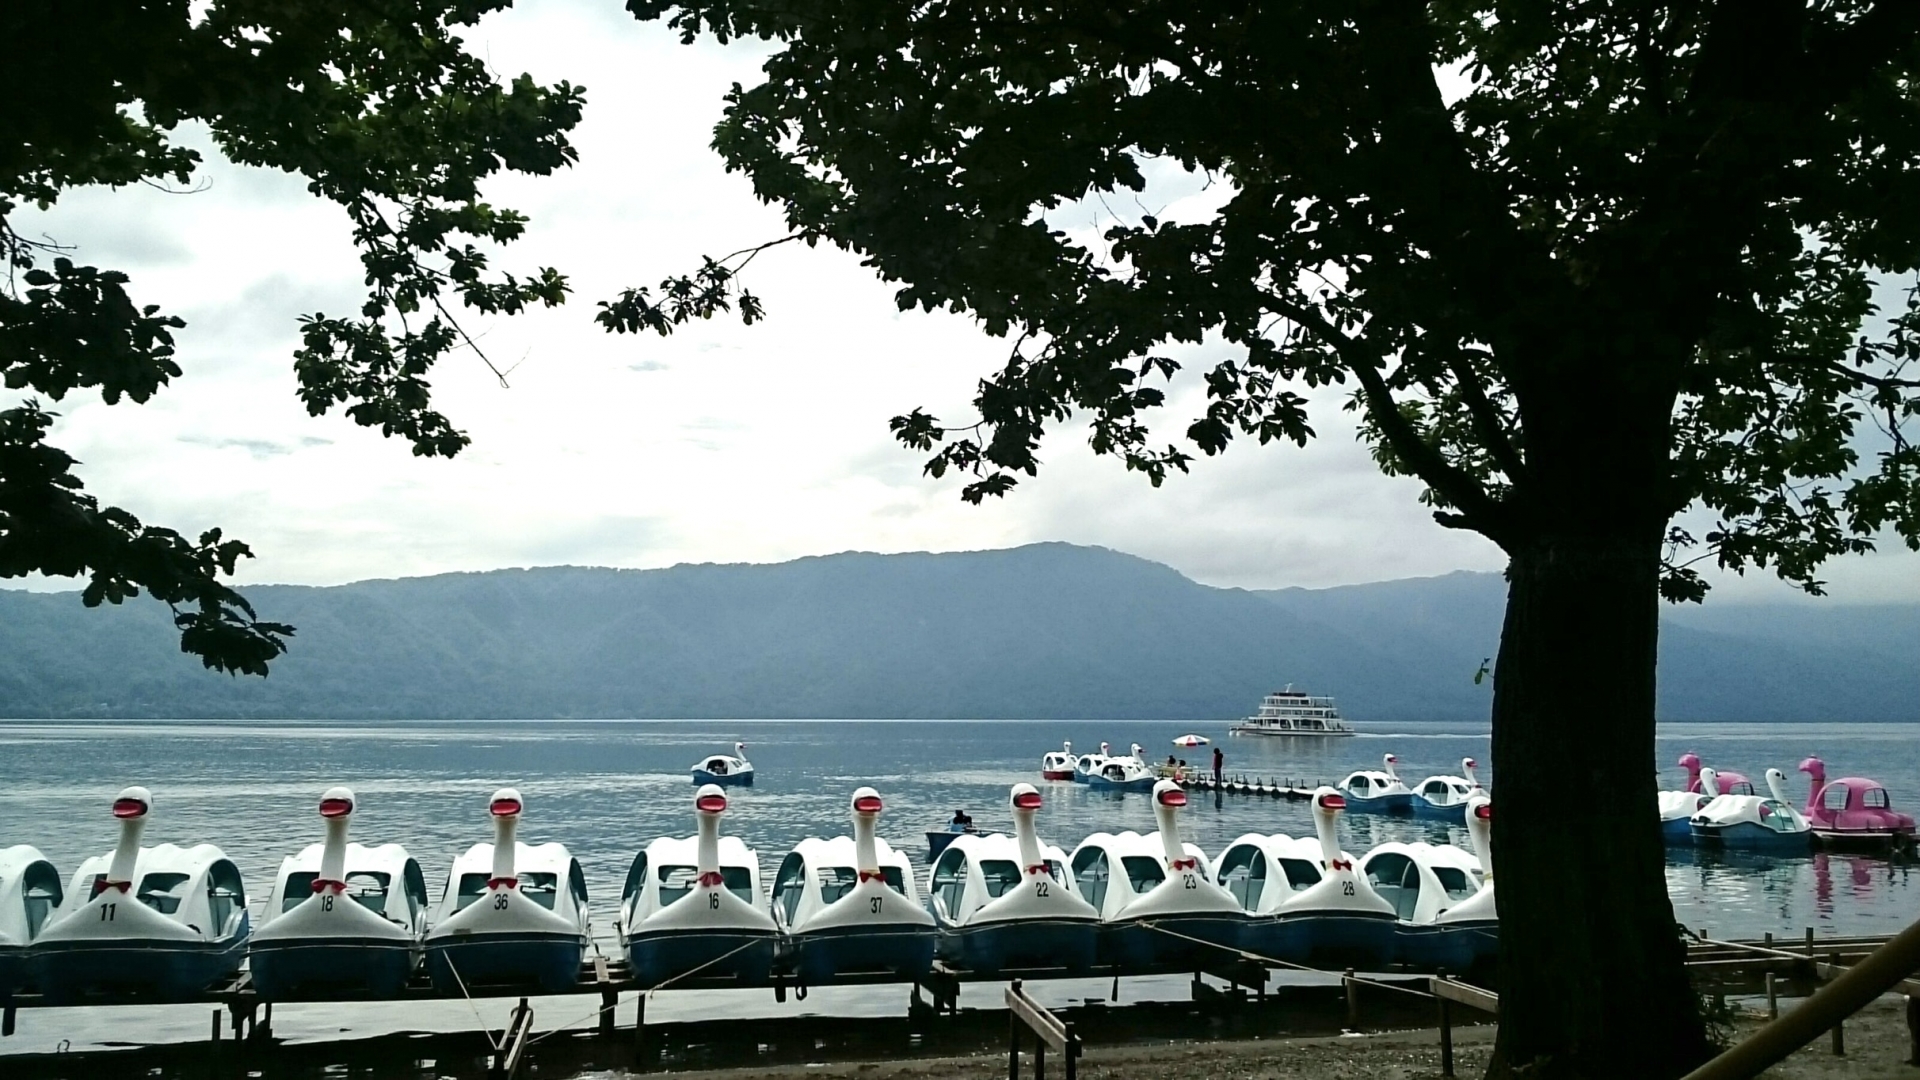 ทะเลสาบโทวาดะ (十和田湖)